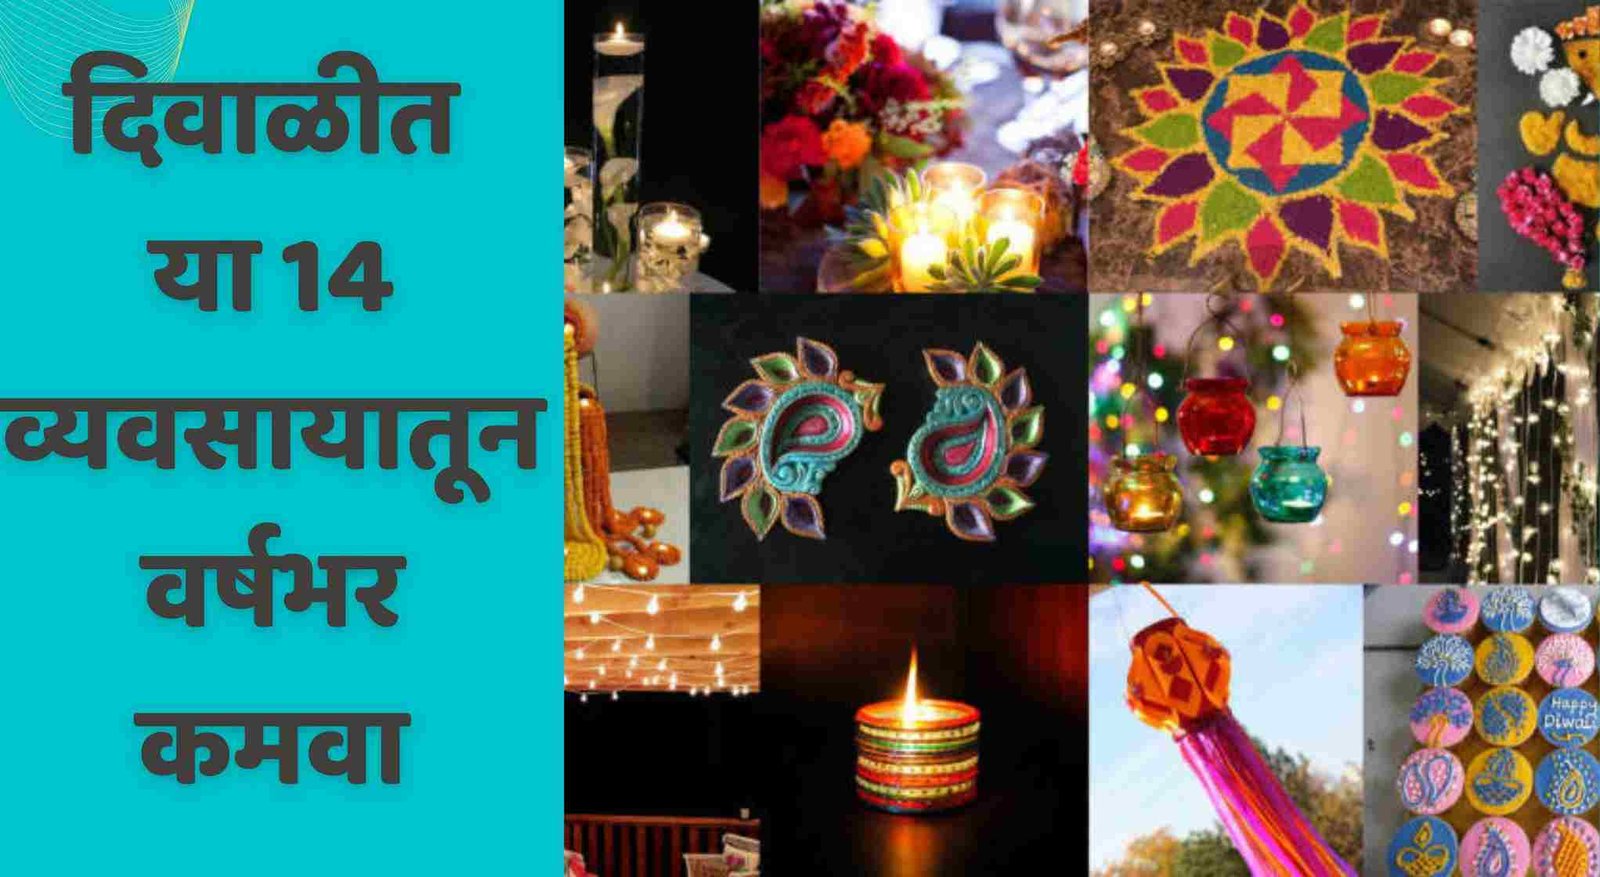 दिवाळीत या 14 व्यवसायातून वर्षभर कमवा | 14 Diwali Business Ideas In Marathi